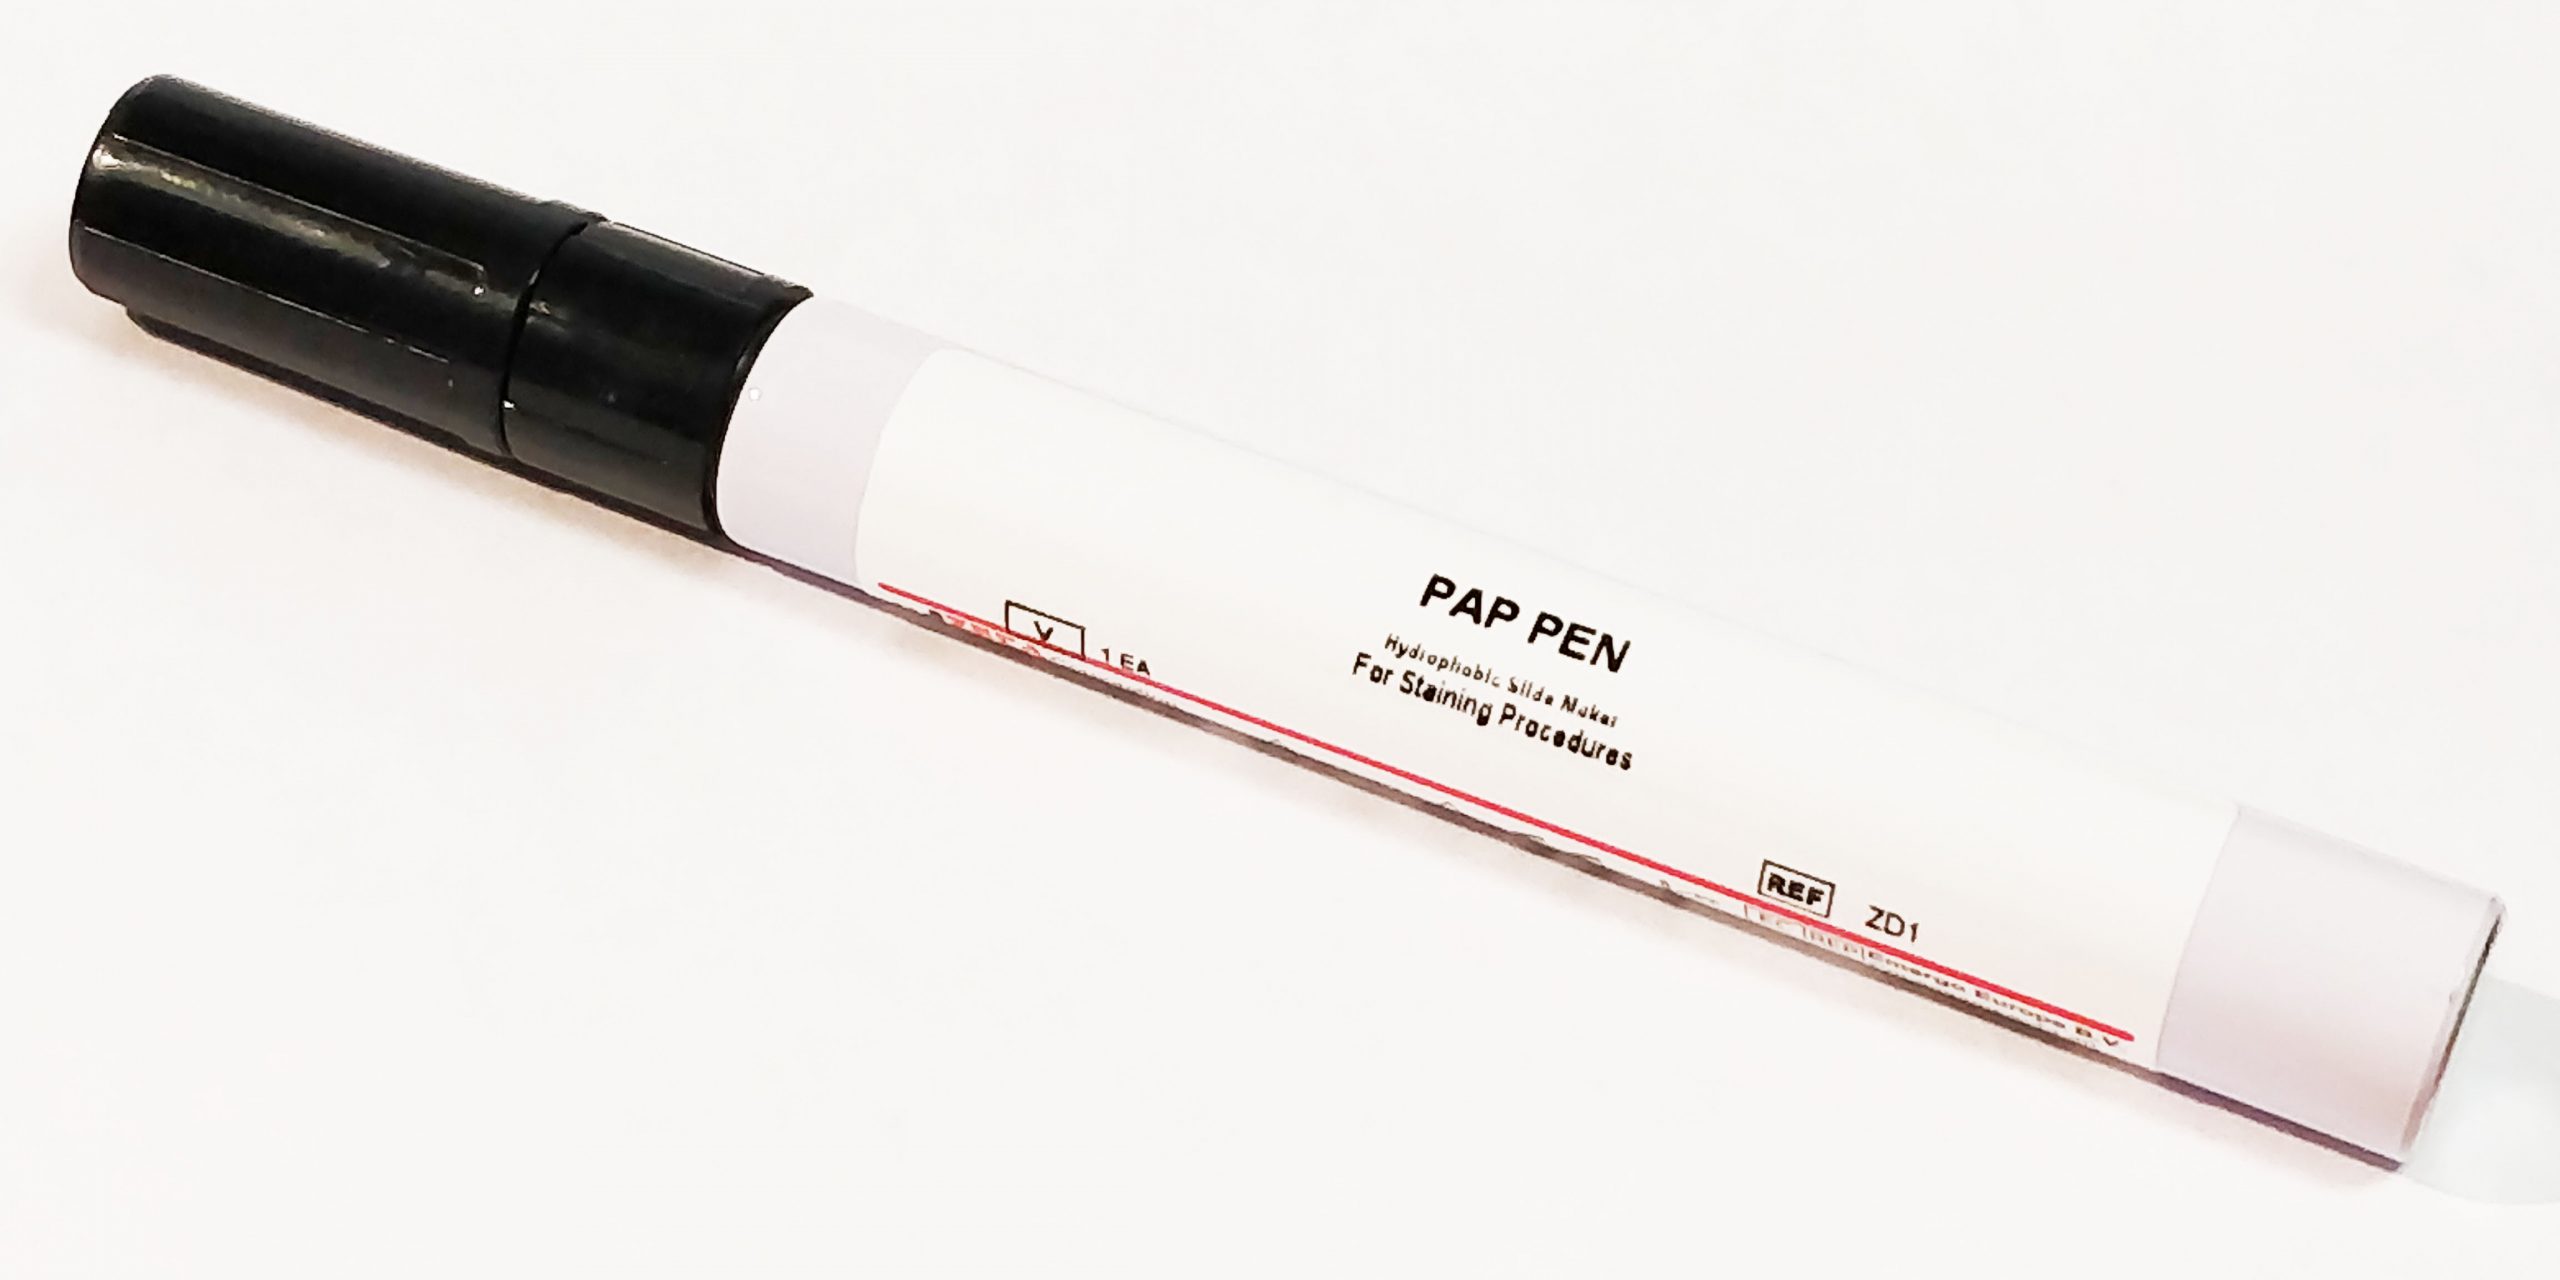 Zeta Pap Pen Zeta Corporation